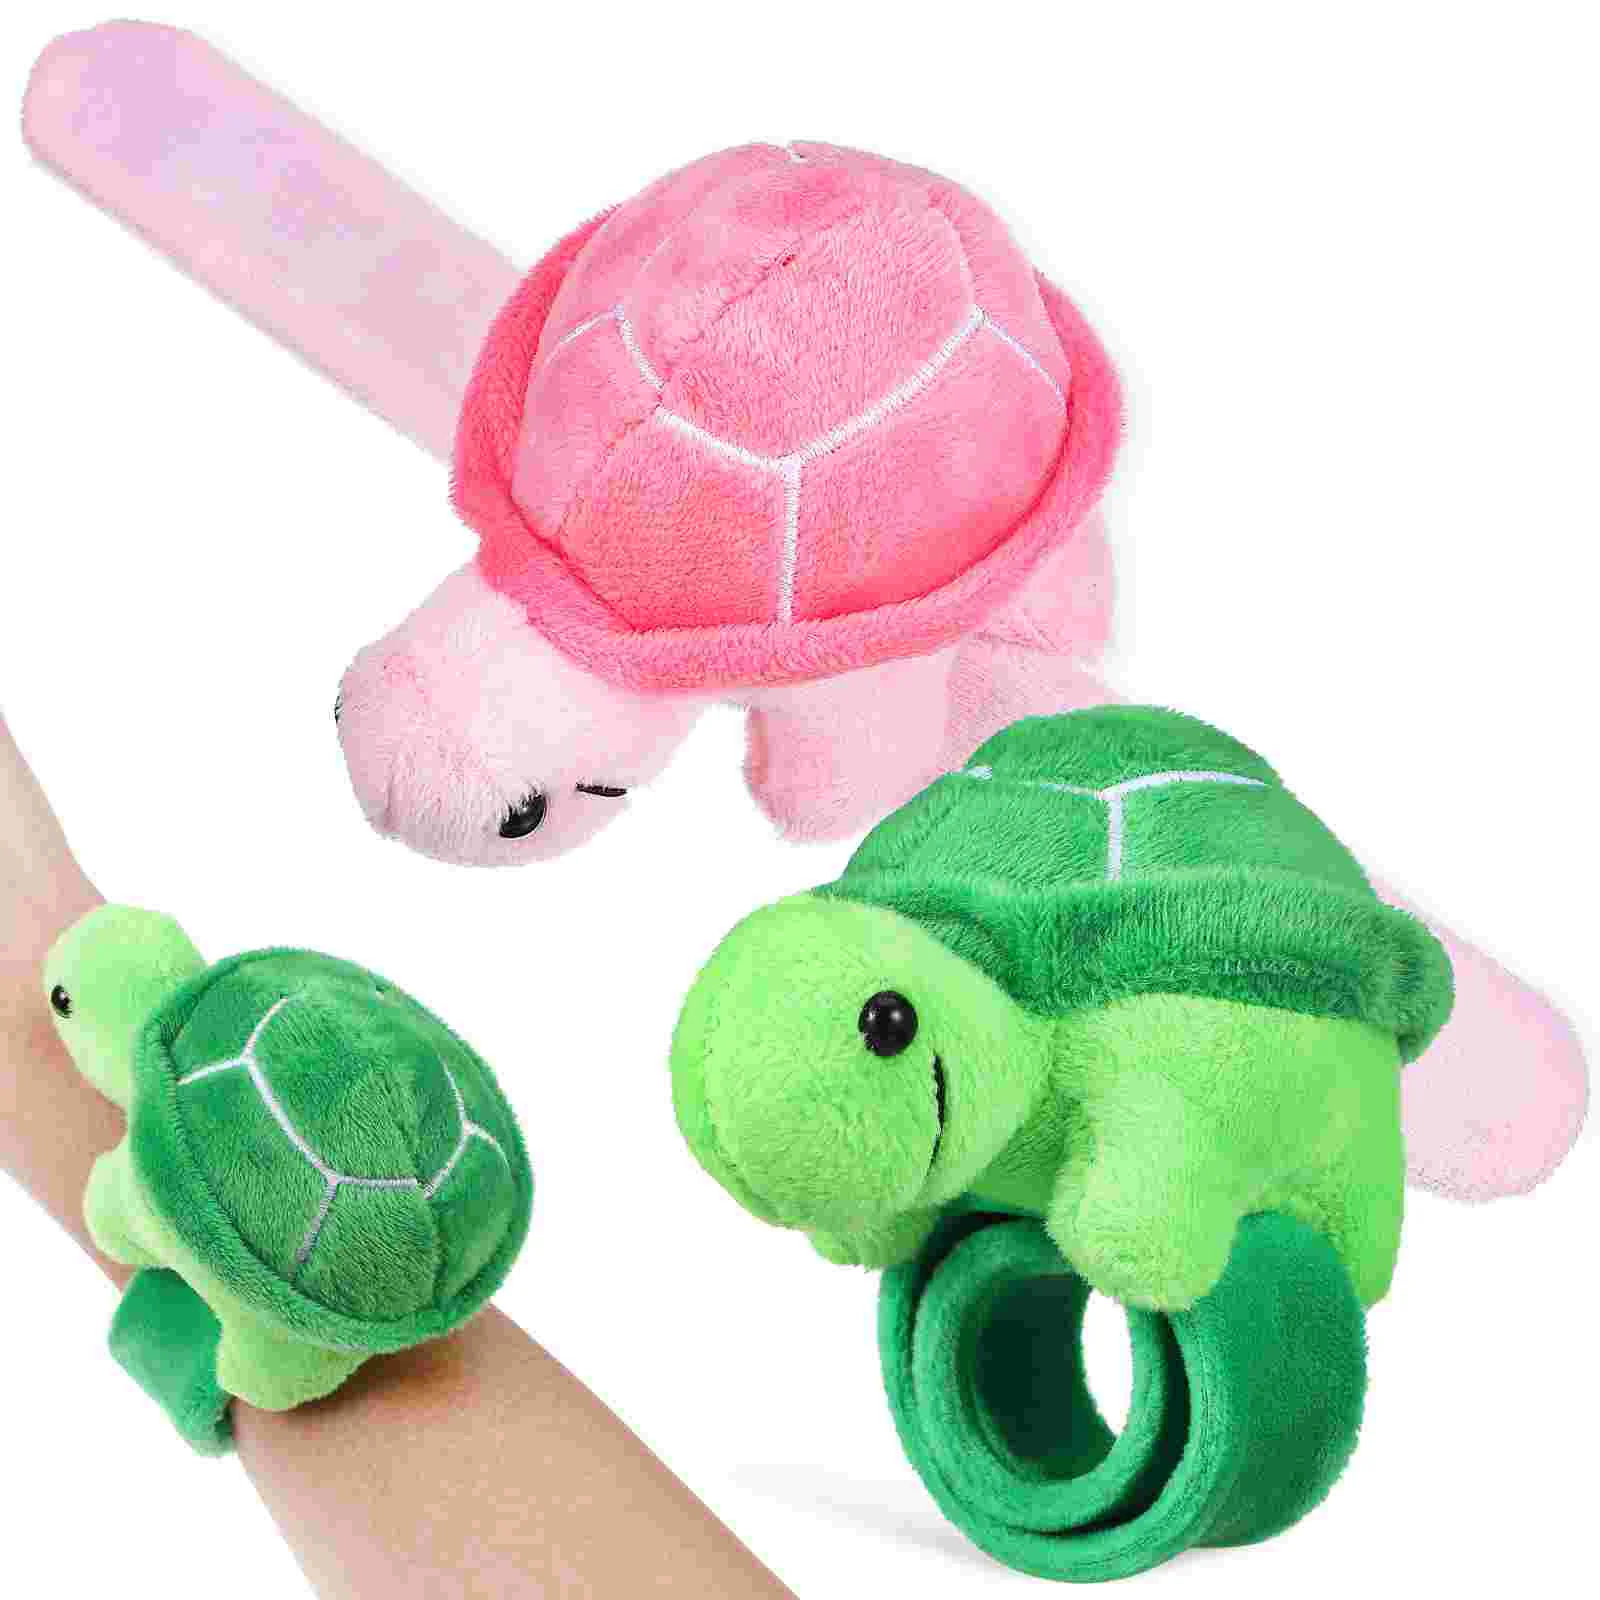 

2pcs Slap Bracelets Plush Animal Wristbands Adorable Turtle Snap Bracelets Party Favors Classroom Prizes